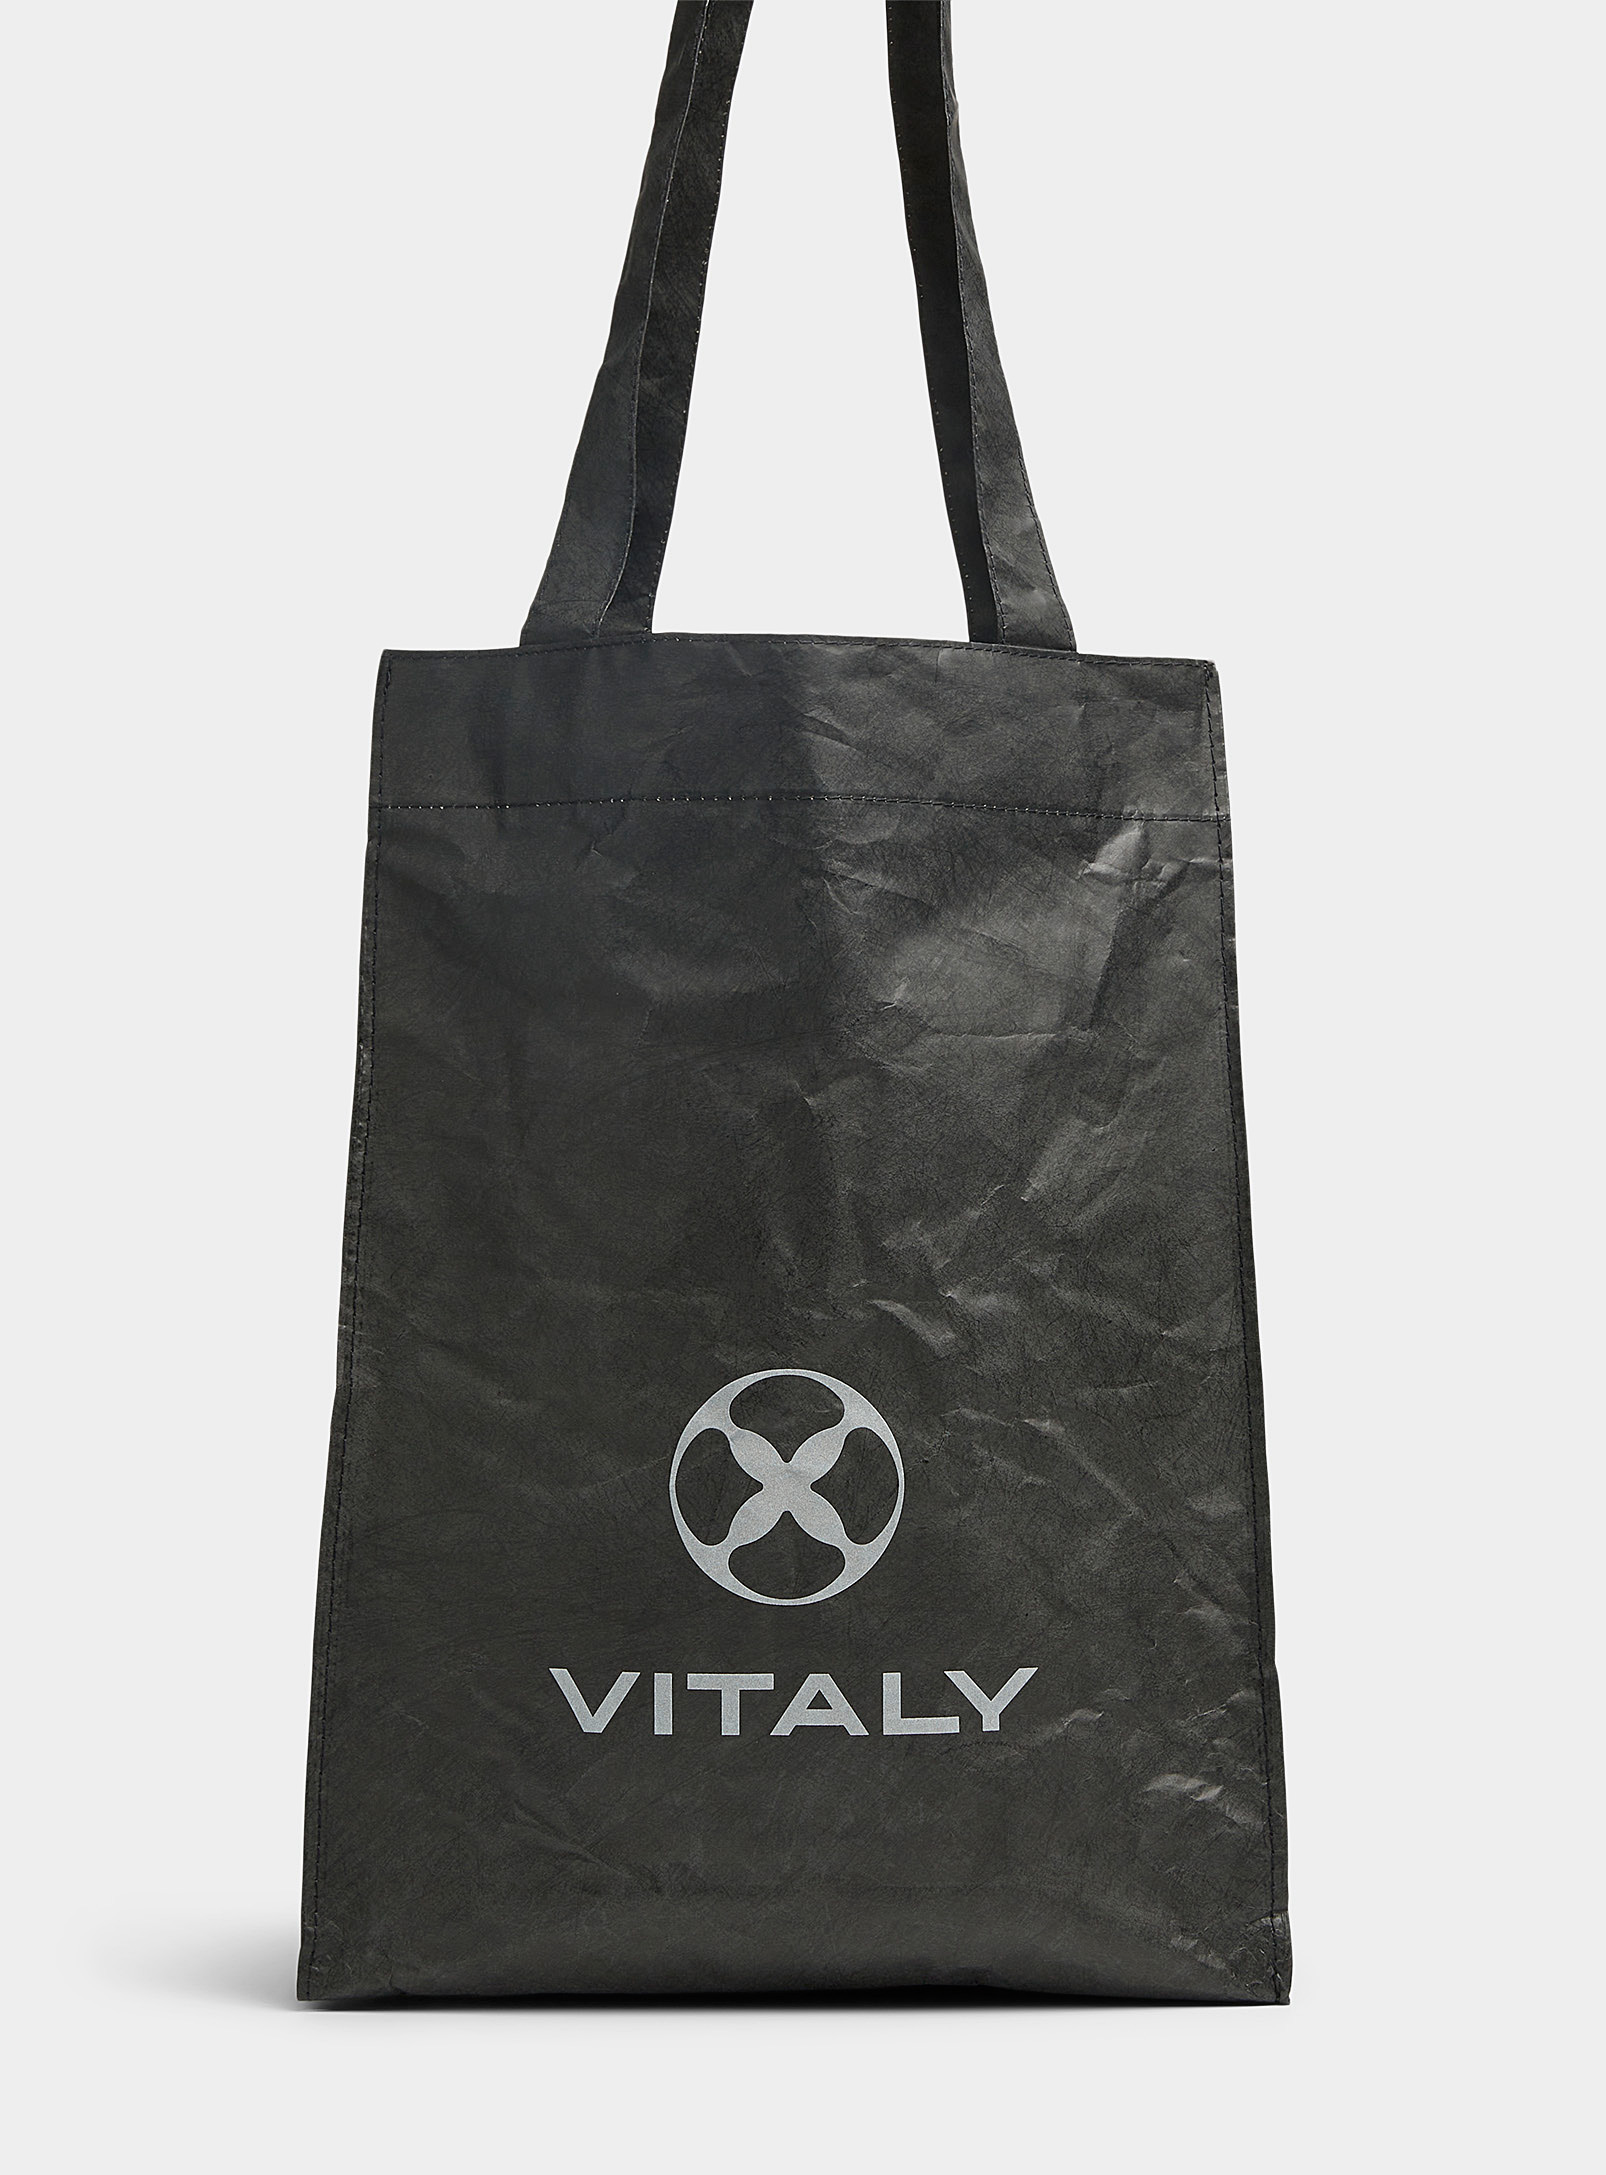 Vitaly - Men's Crackled Tote Bag